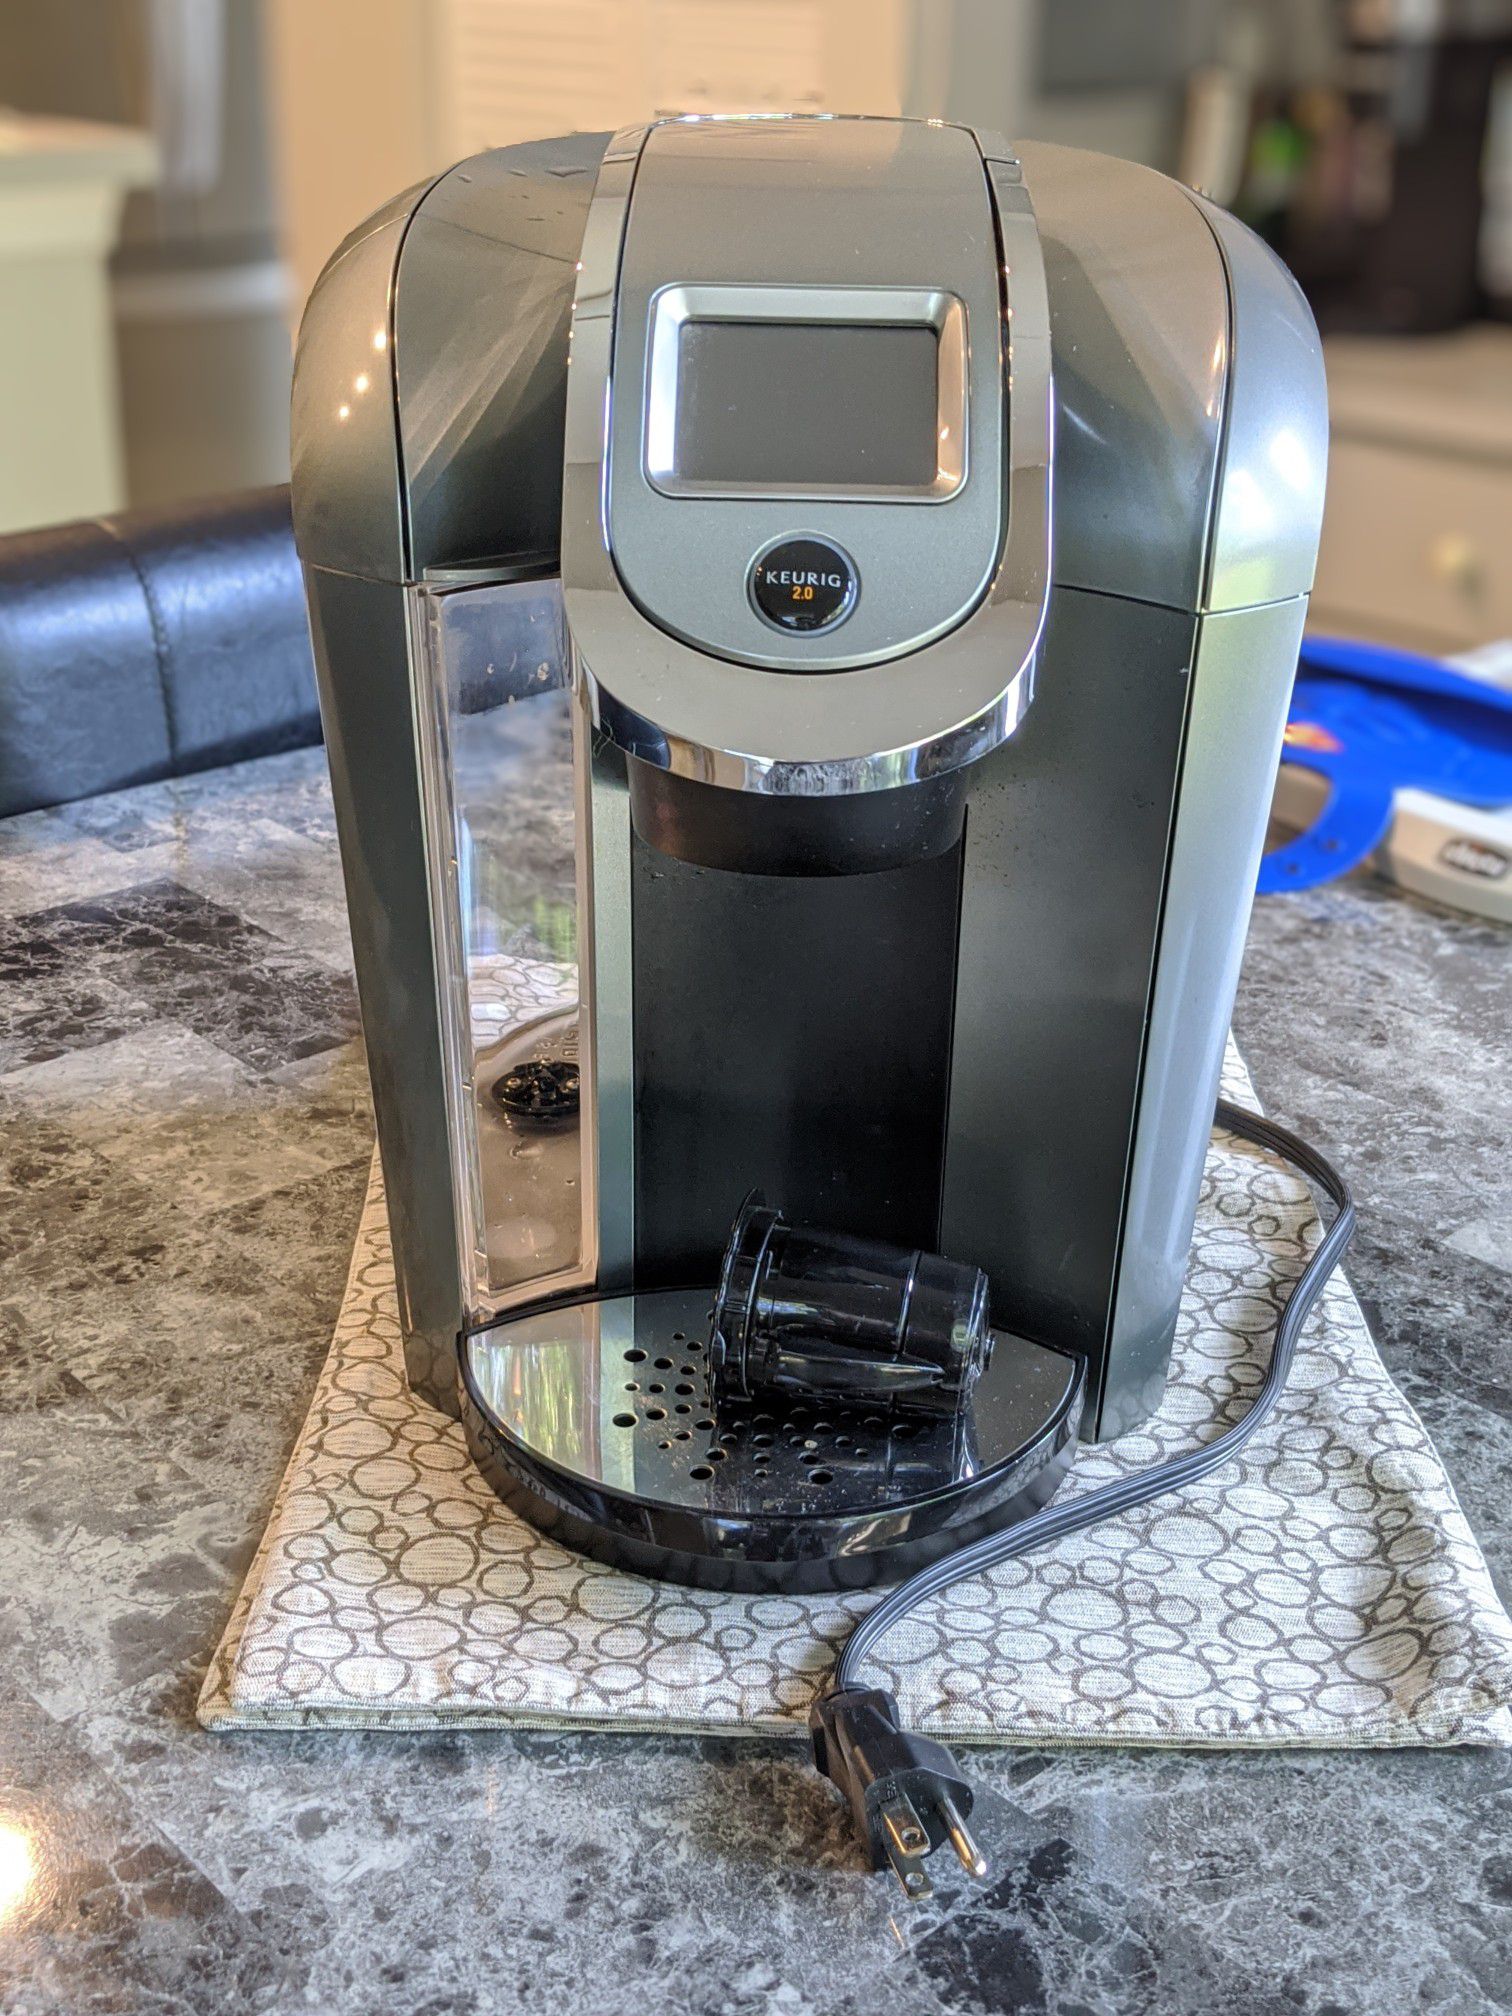 Keurig Hot 2.0 K525c Coffee Maker